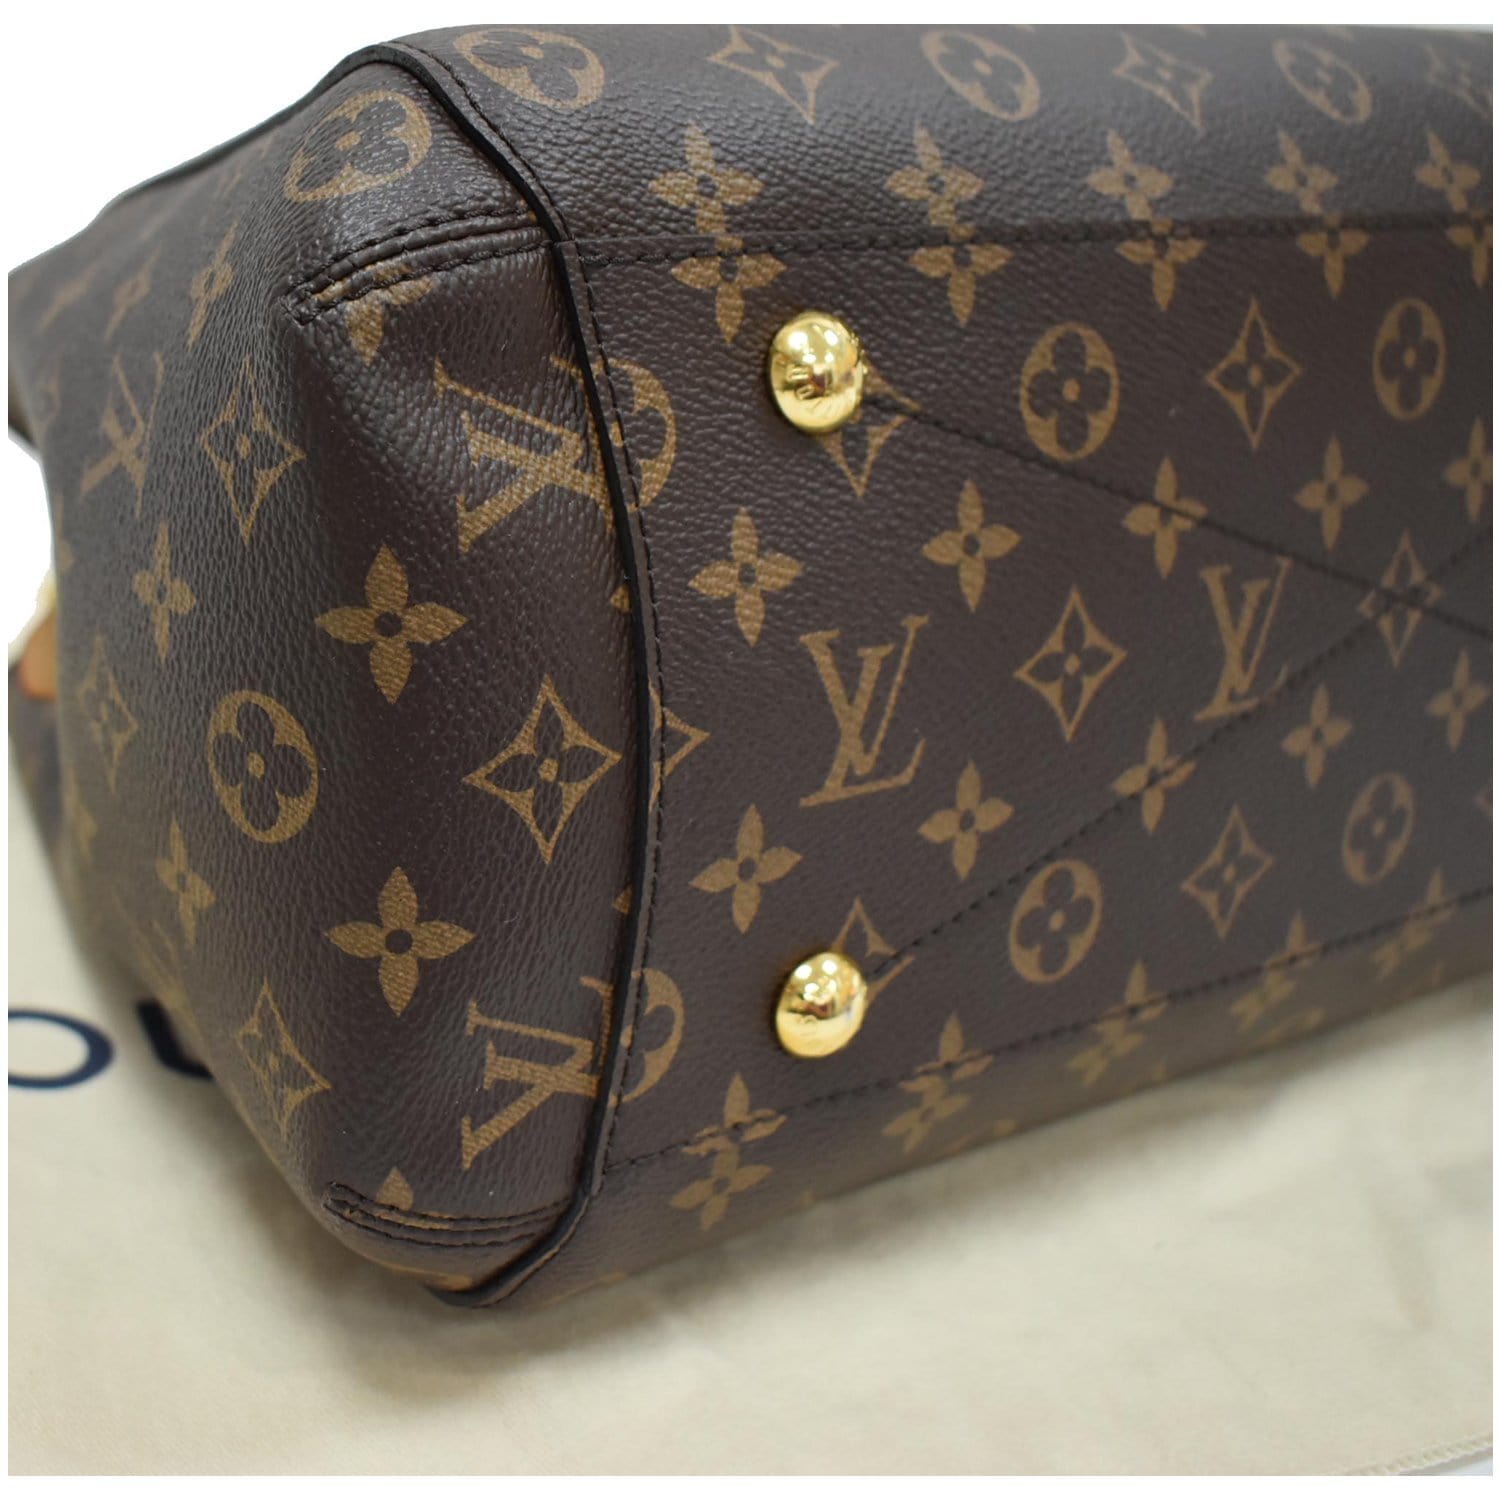 Louis Vuitton, Bags, Louis Vuitton Galleria Dm Leather Bag Sz L